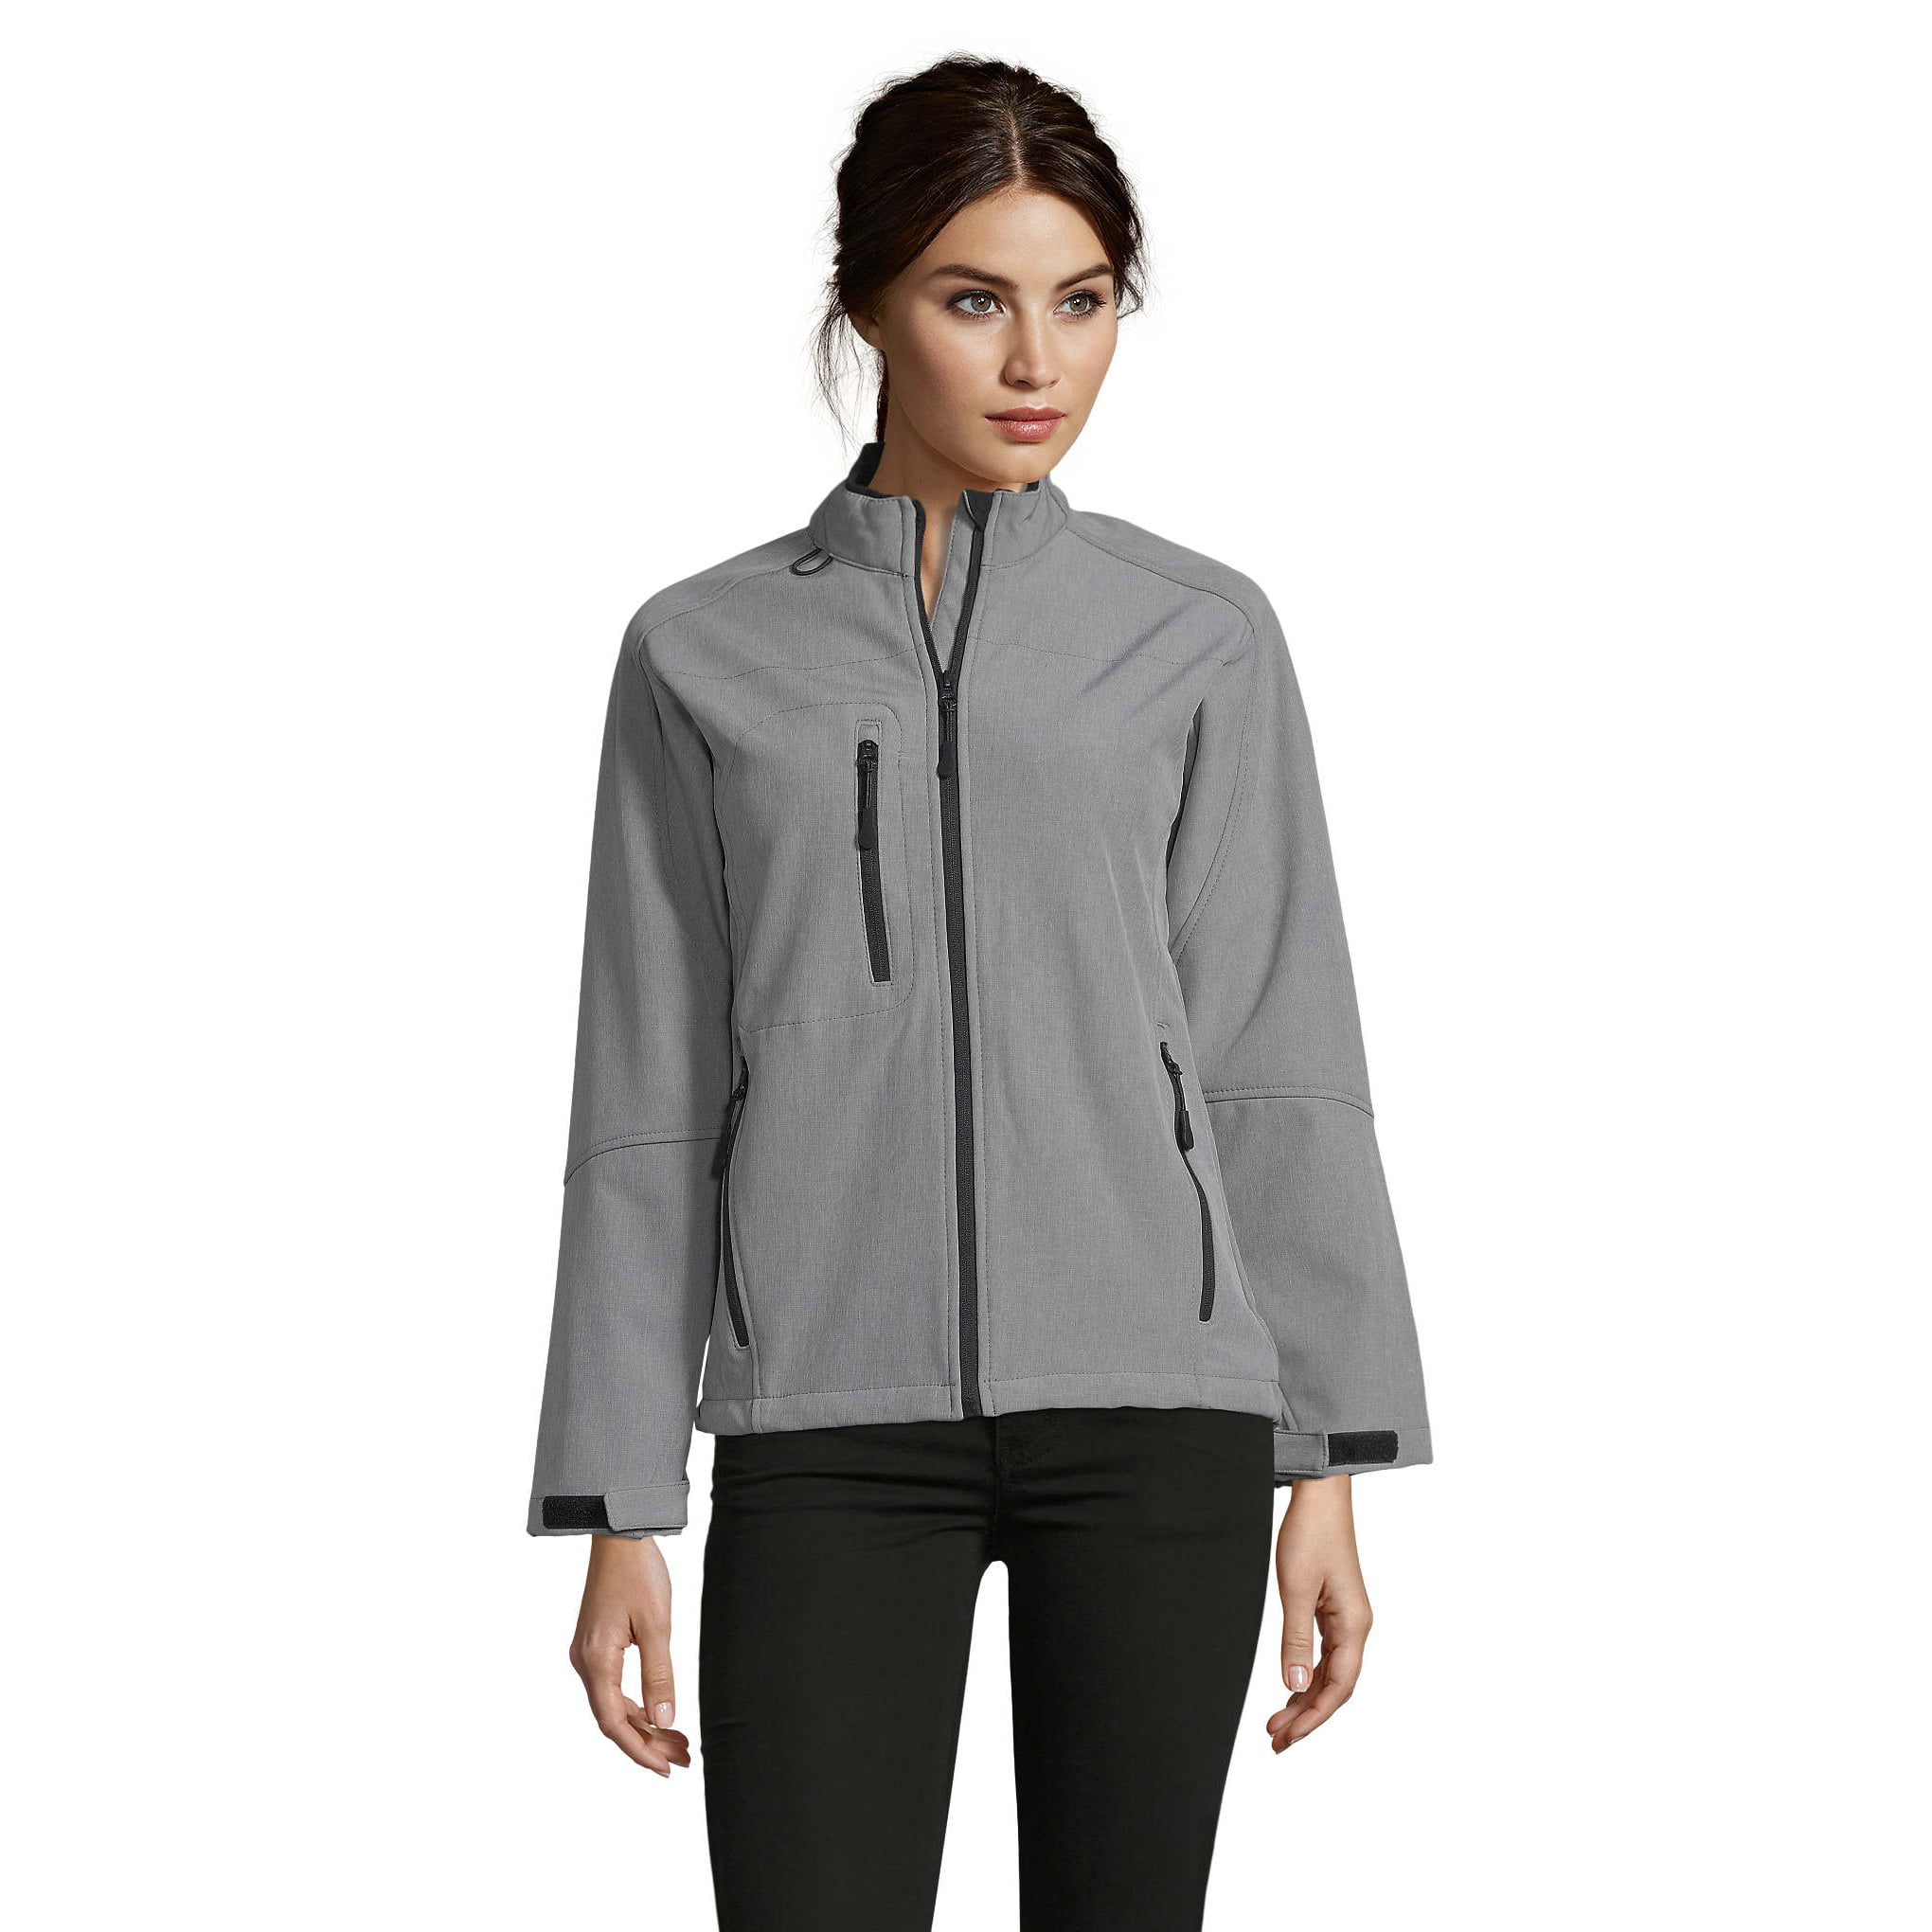 Proficiat Zeemeeuw Opmerkelijk SOLS Womens Roxy Soft Shell Jacket (Breathable, Windproof And Water  Resistant) - Walmart.com